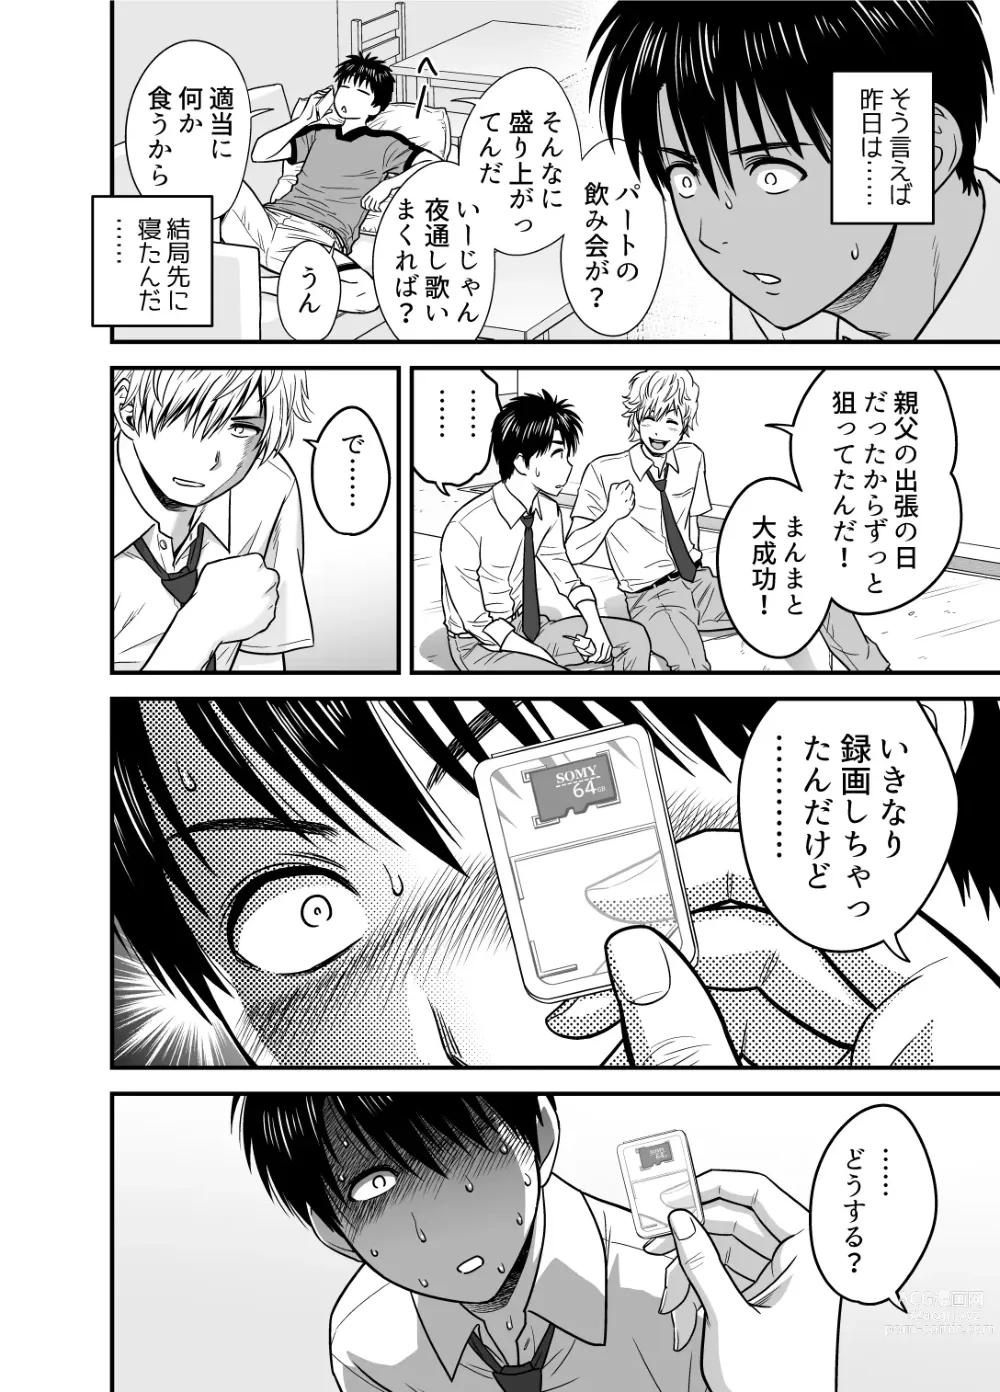 Page 20 of doujinshi Haha ga TomoKano ni Natta node